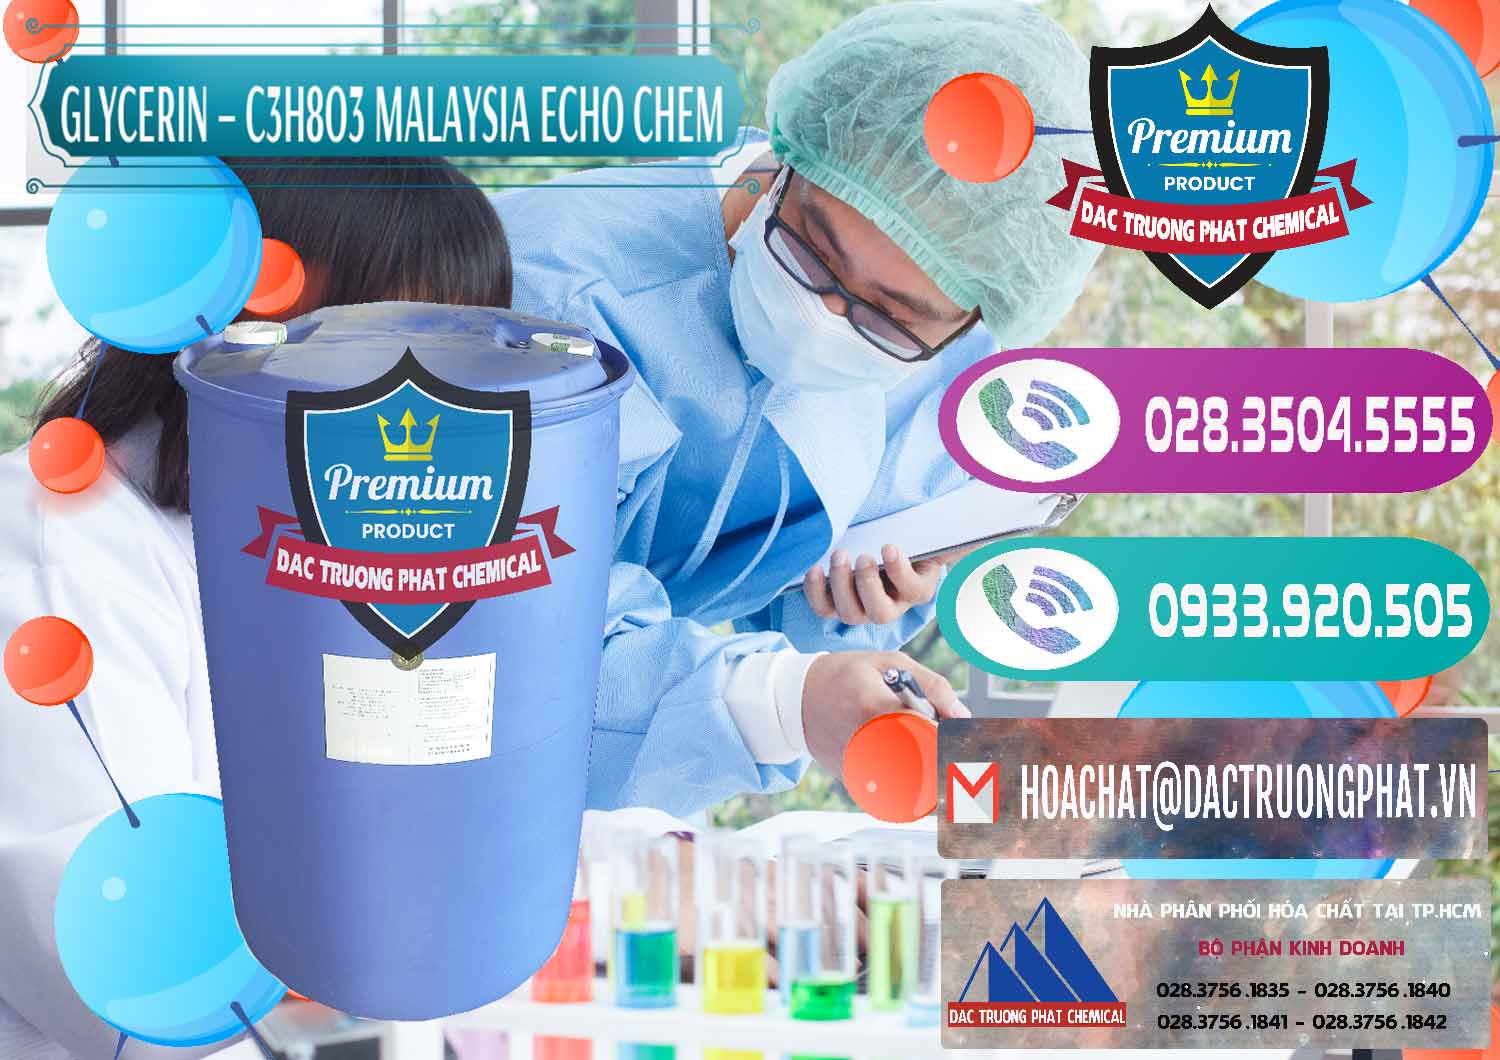 Công ty kinh doanh _ bán Glycerin – C3H8O3 99.7% Echo Chem Malaysia - 0273 - Đơn vị cung ứng và phân phối hóa chất tại TP.HCM - hoachatxulynuoc.com